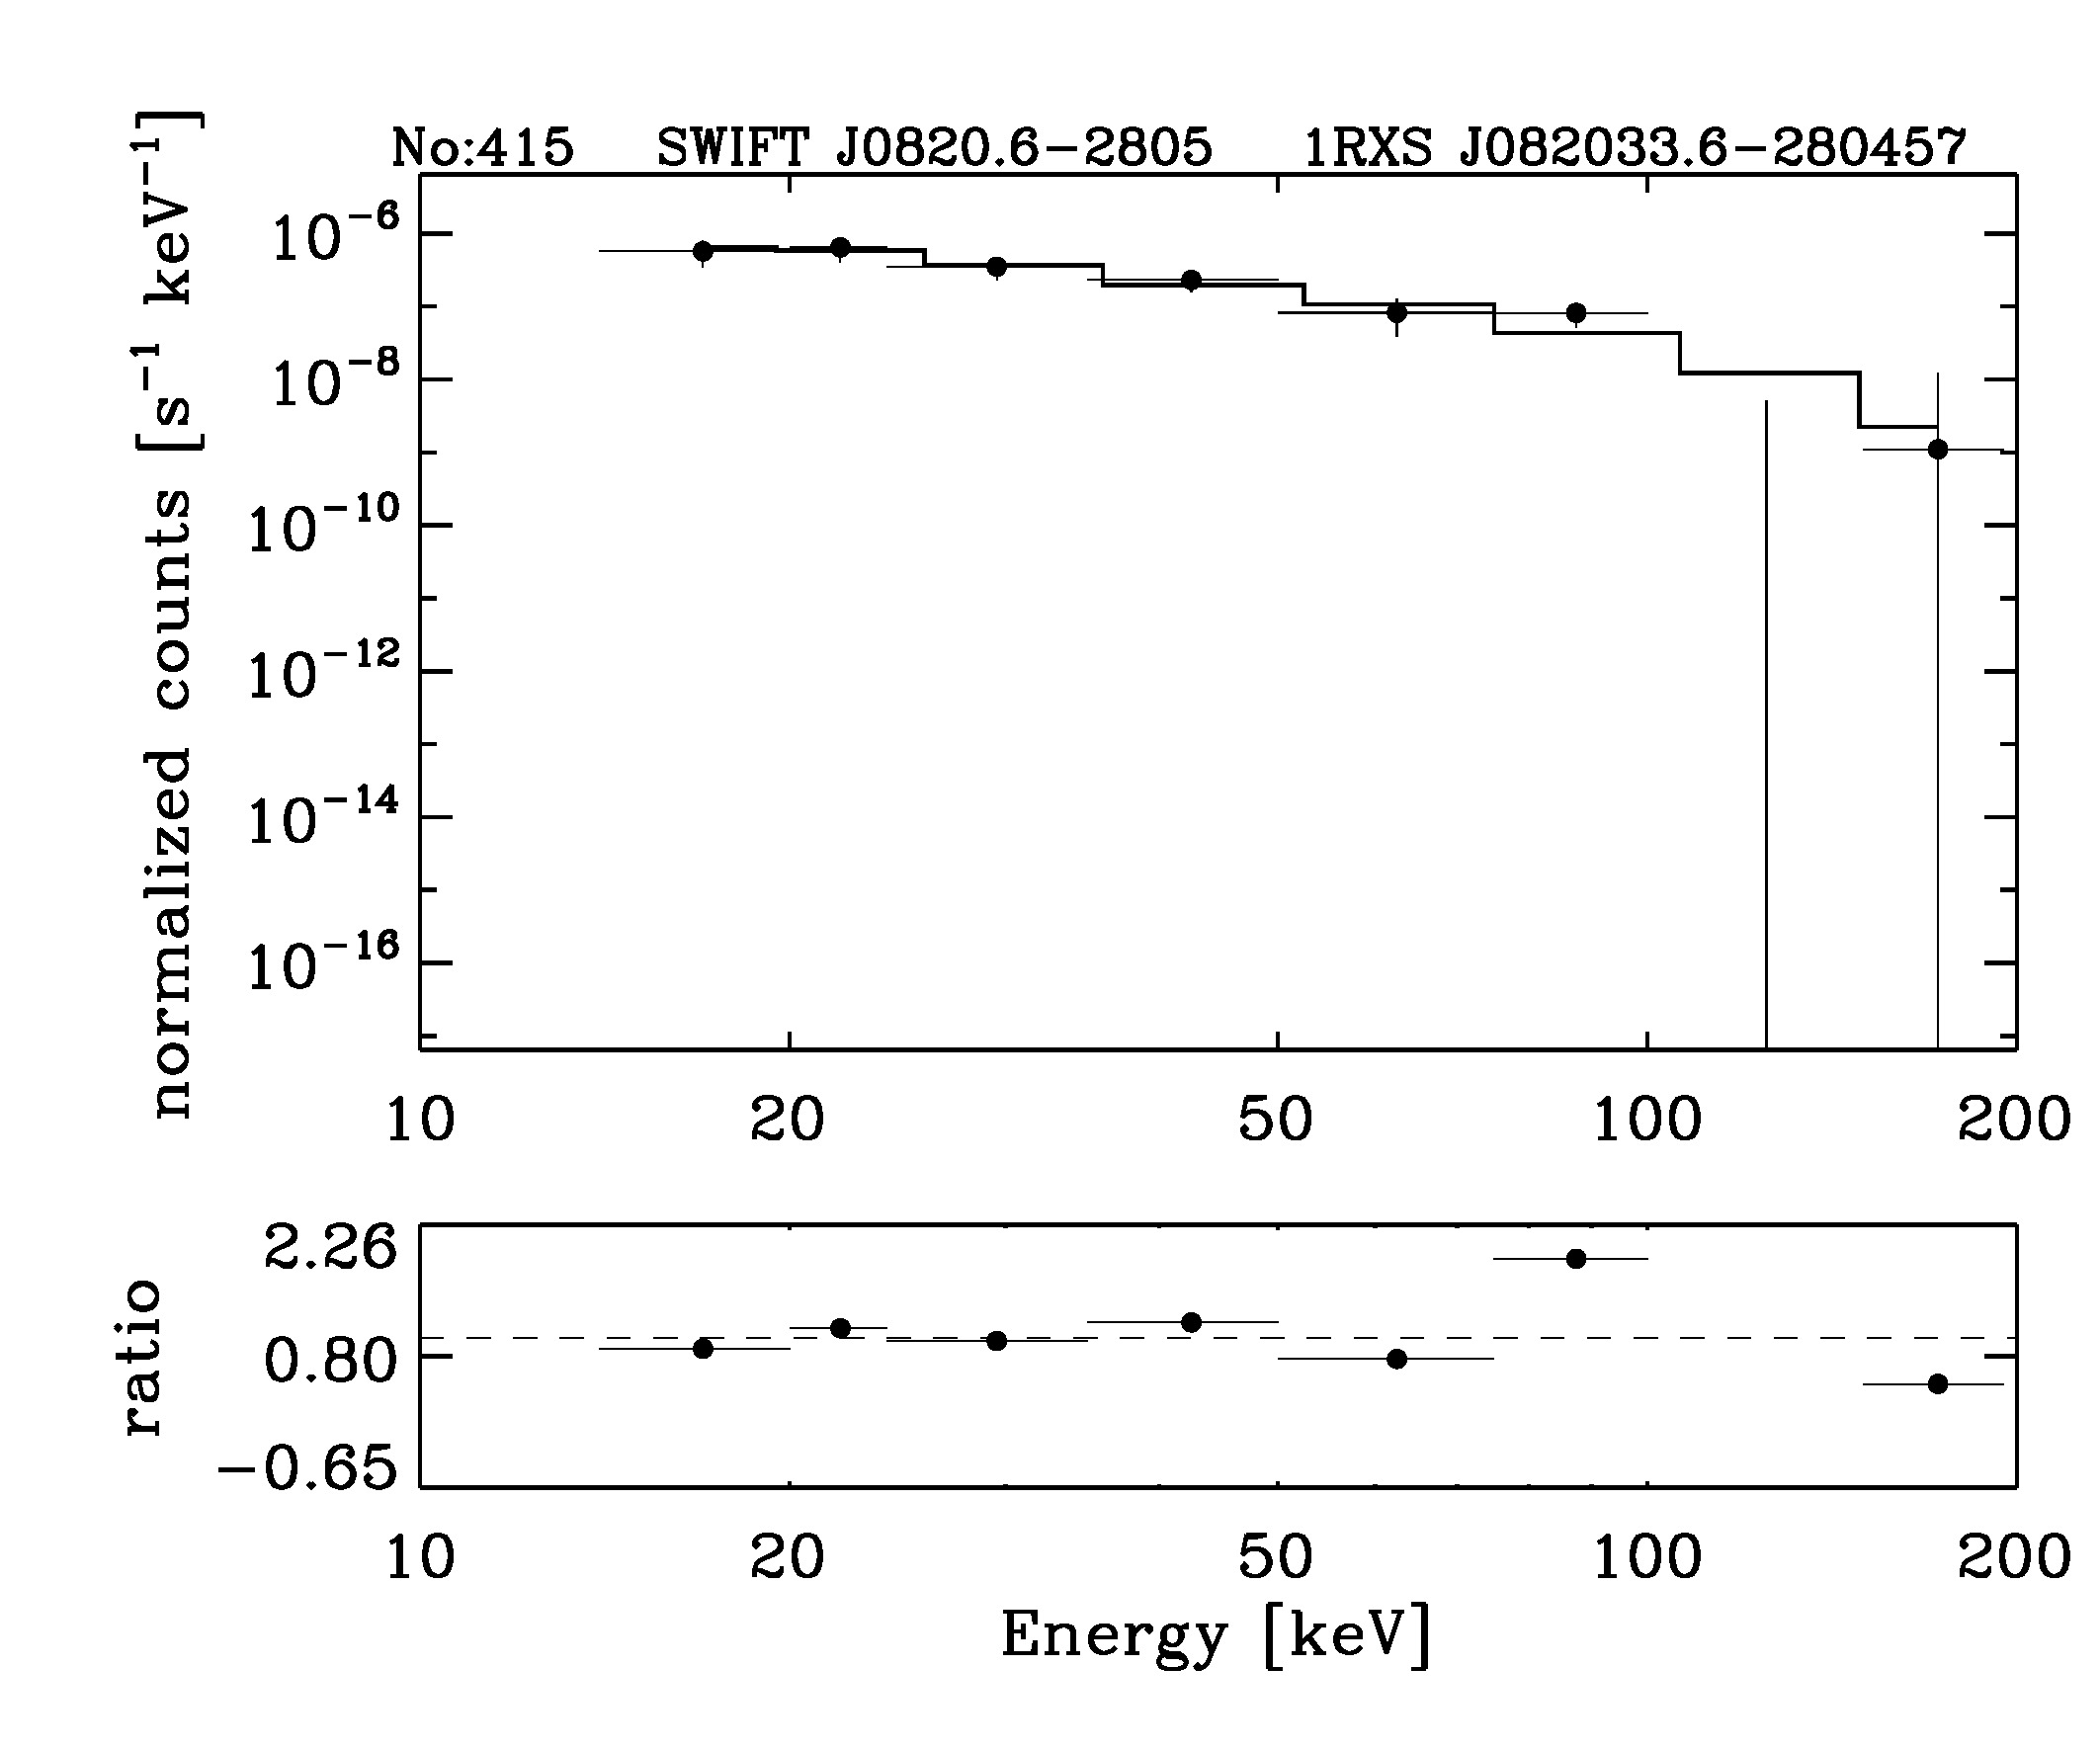 BAT Spectrum for SWIFT J0820.6-2805